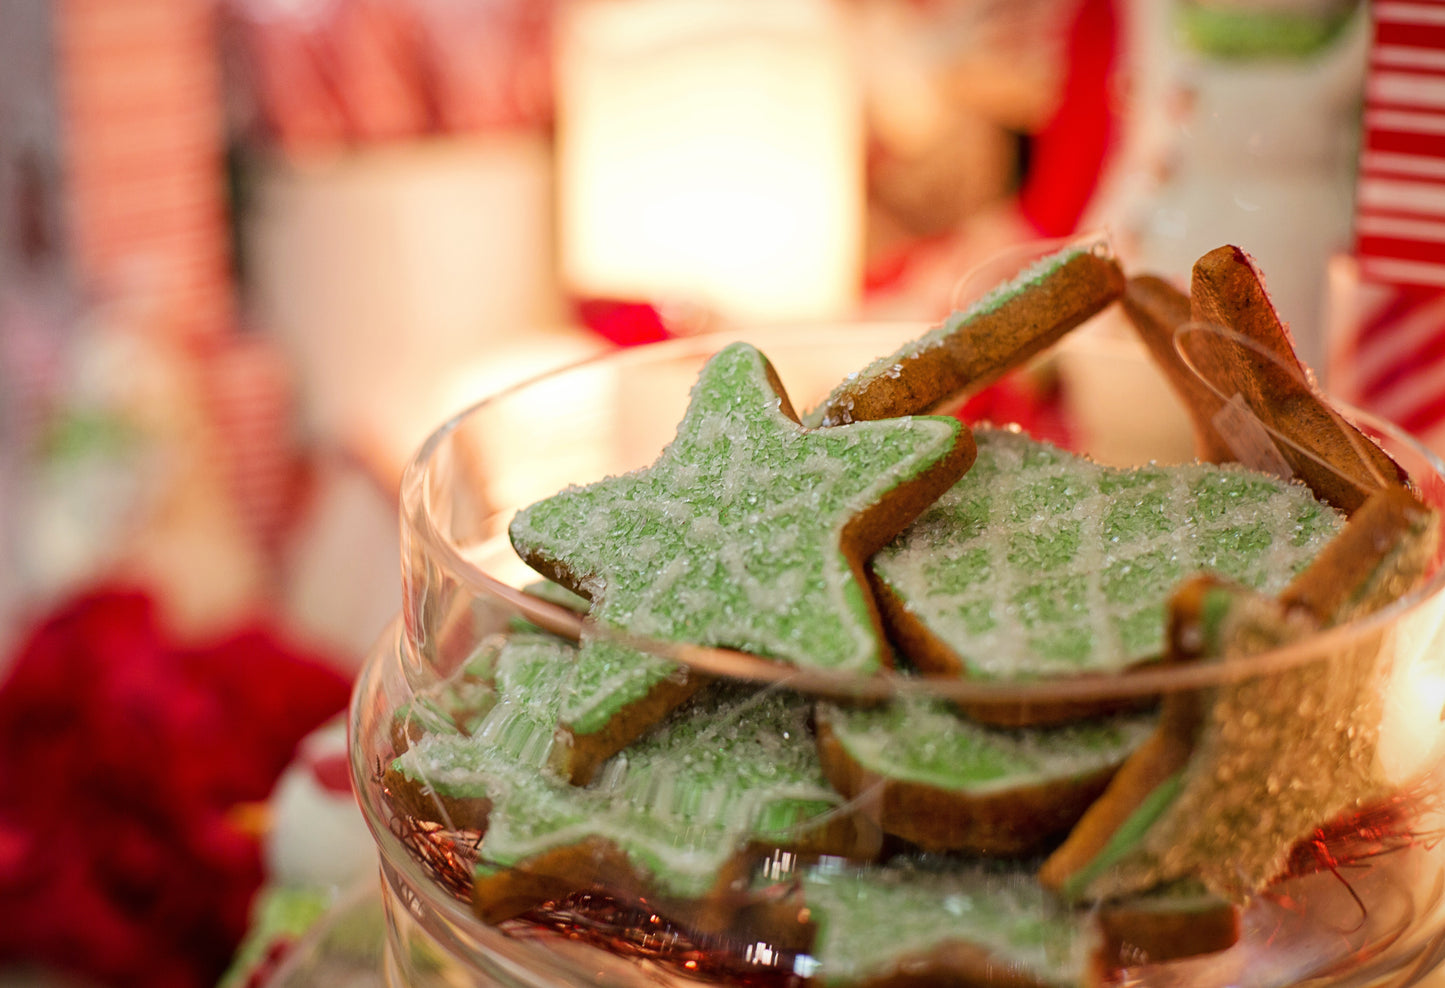 Low waste Christmas gift ideas - handmade cookies in a cookie jar.